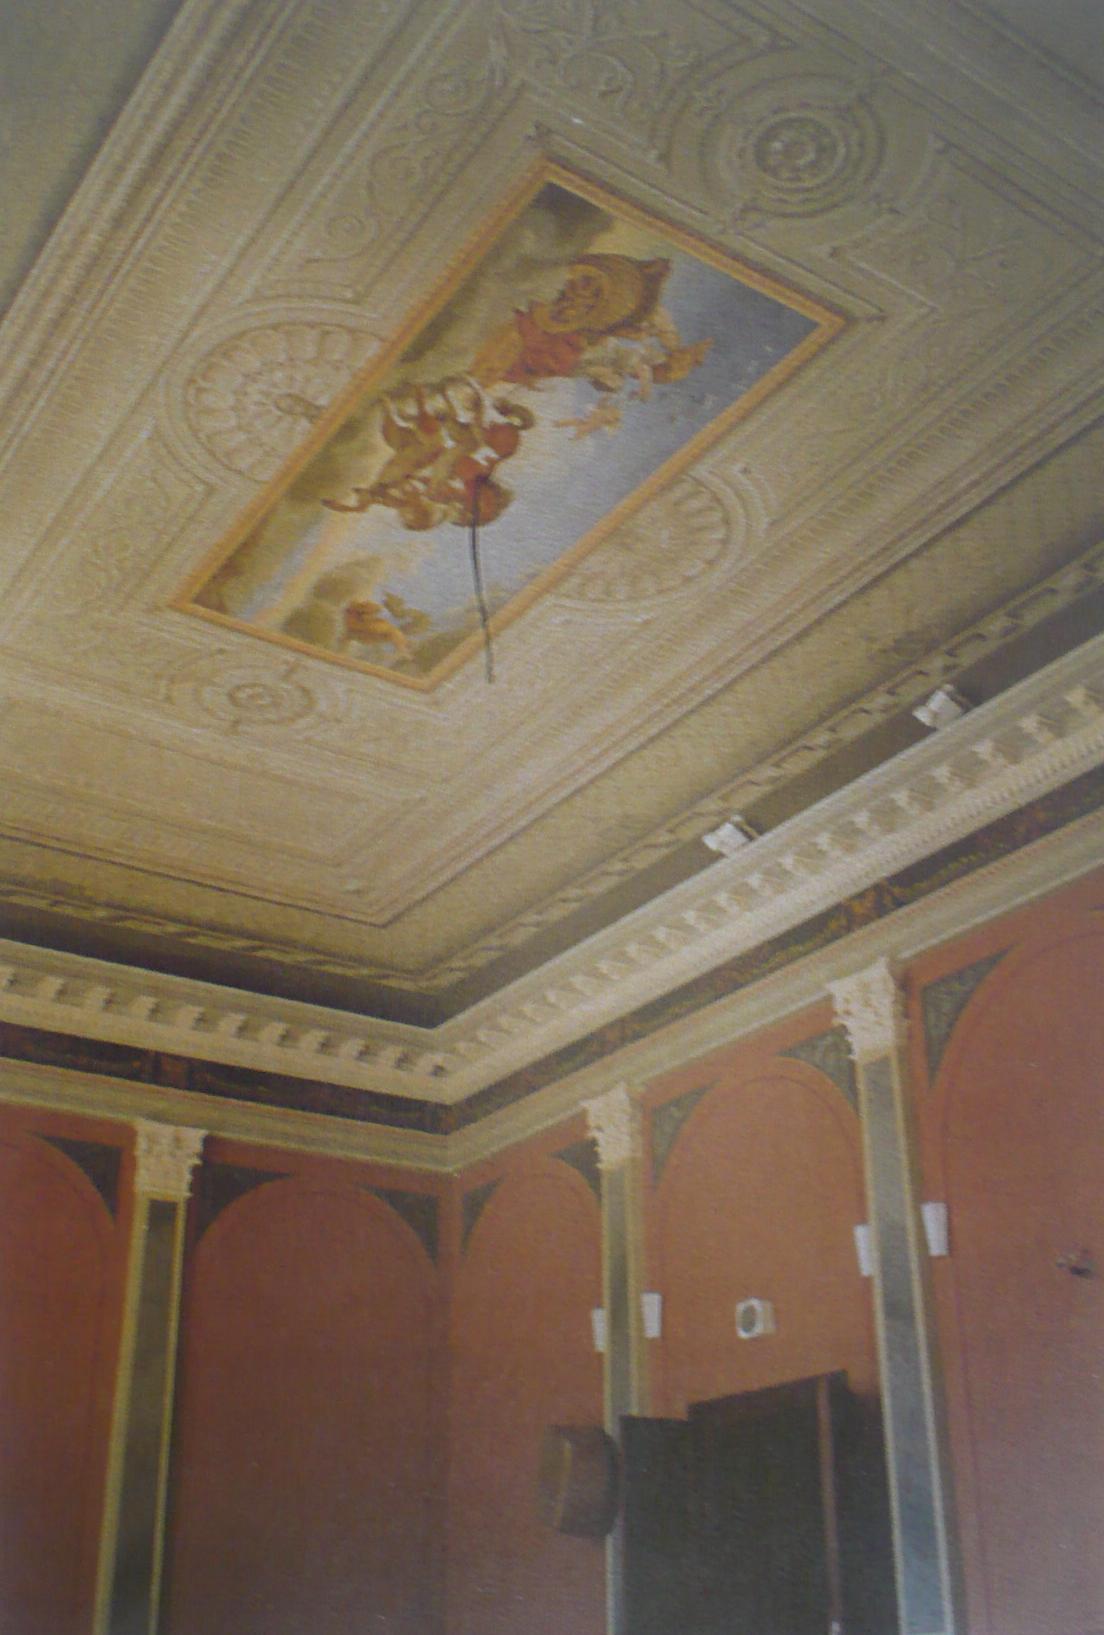 Obrázek 68: Jan Sviták, dekorativní malby v sálu, 1805, zámek Bystřice pod